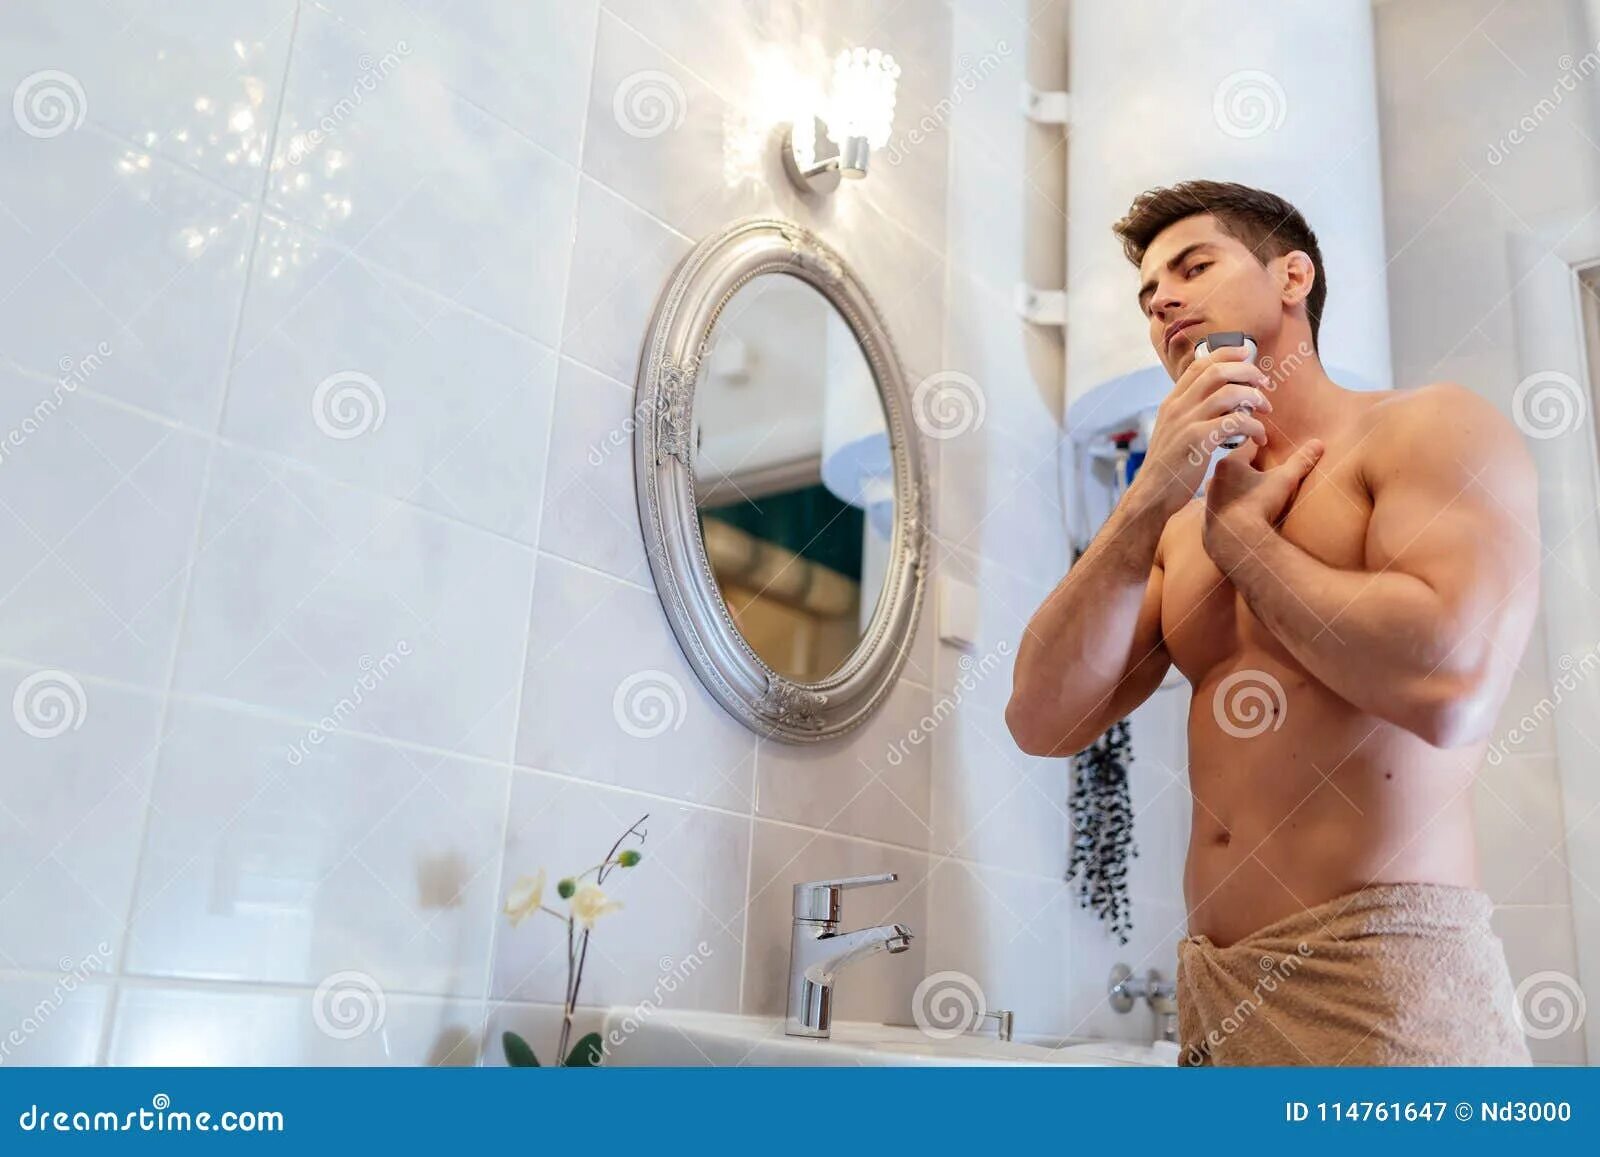 Мужчина в ванной в полотенце. Мужчина бреется в ванной. Мускулистый мужчина в ванне. Человек для полотенец для ванной. Парни в ванной комнате